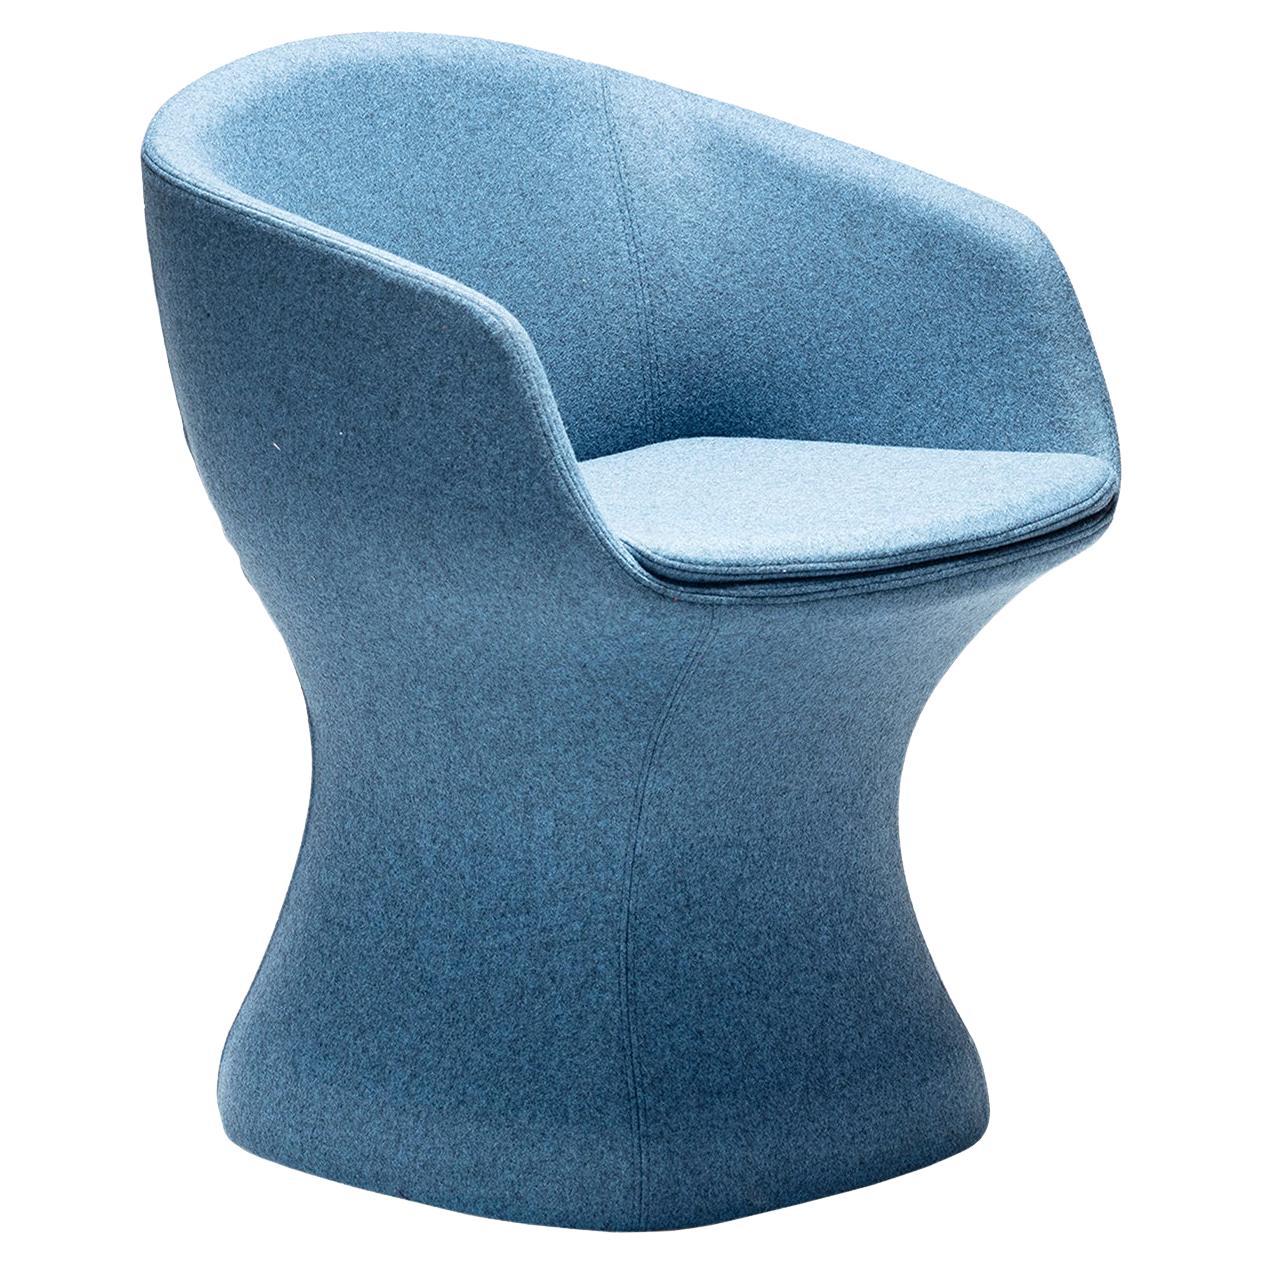 So-Pretty Blue Armchair by Dario Deplin